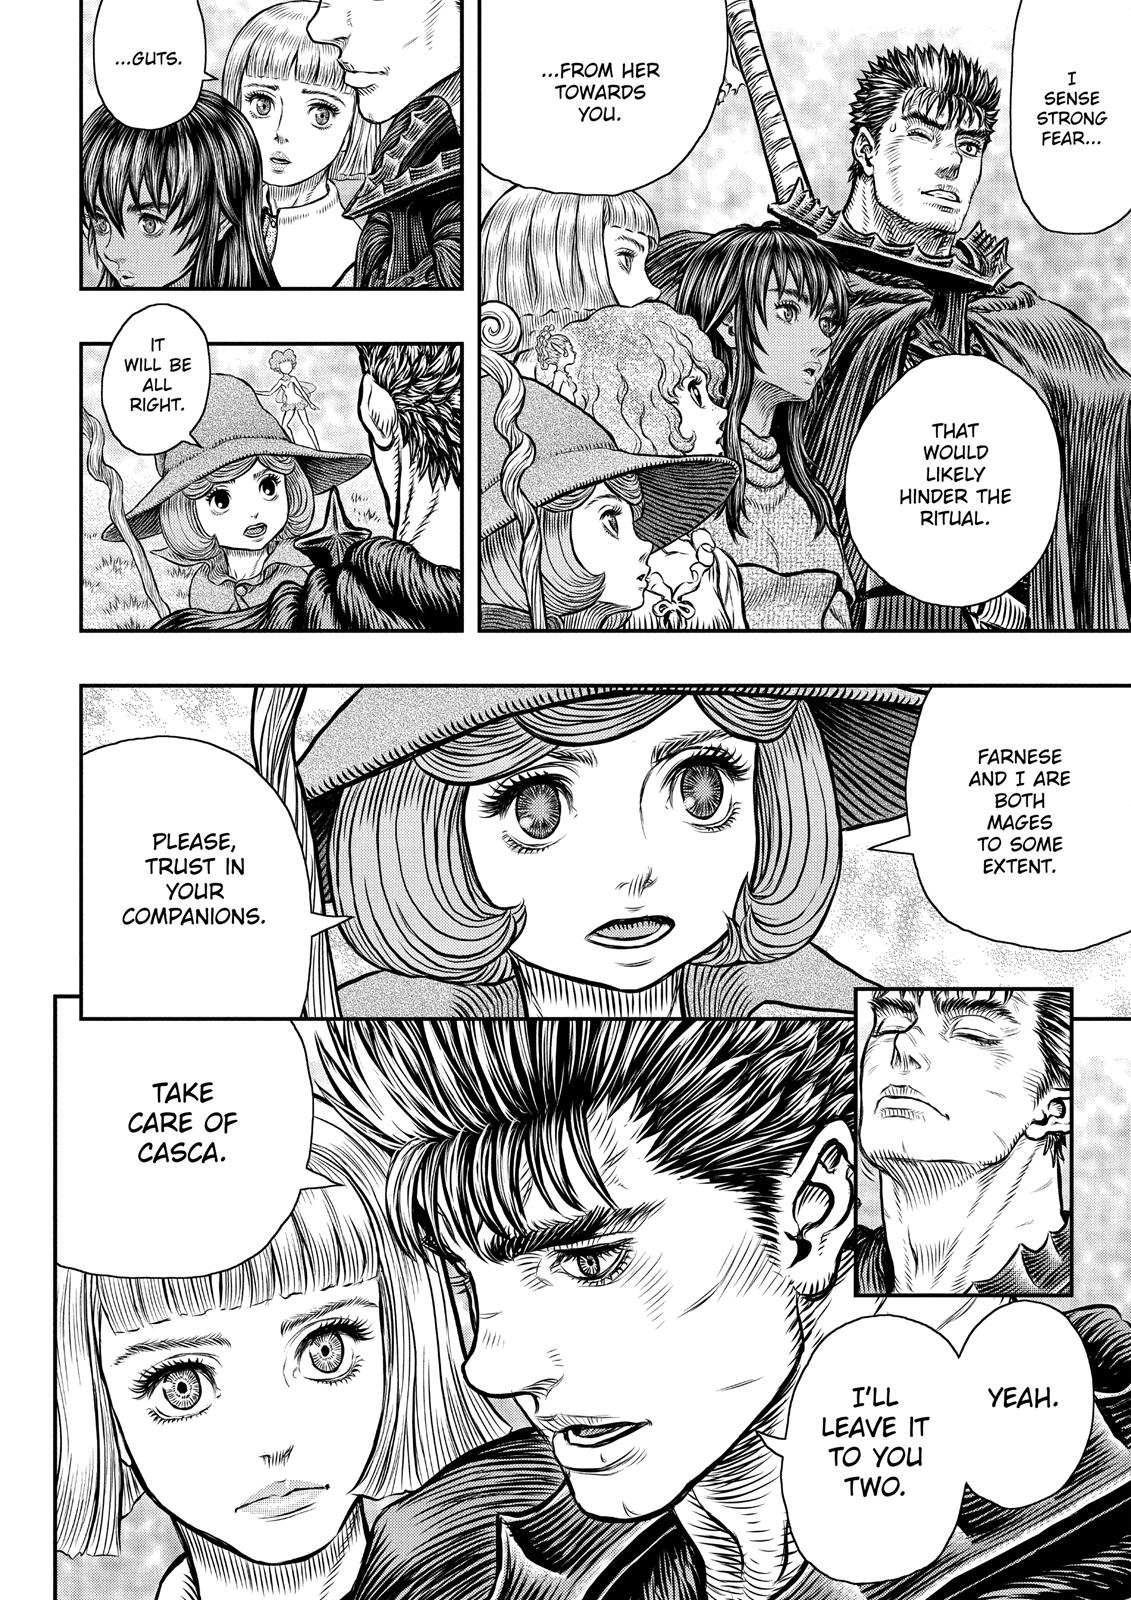 Berserk Manga Chapter 347 image 09